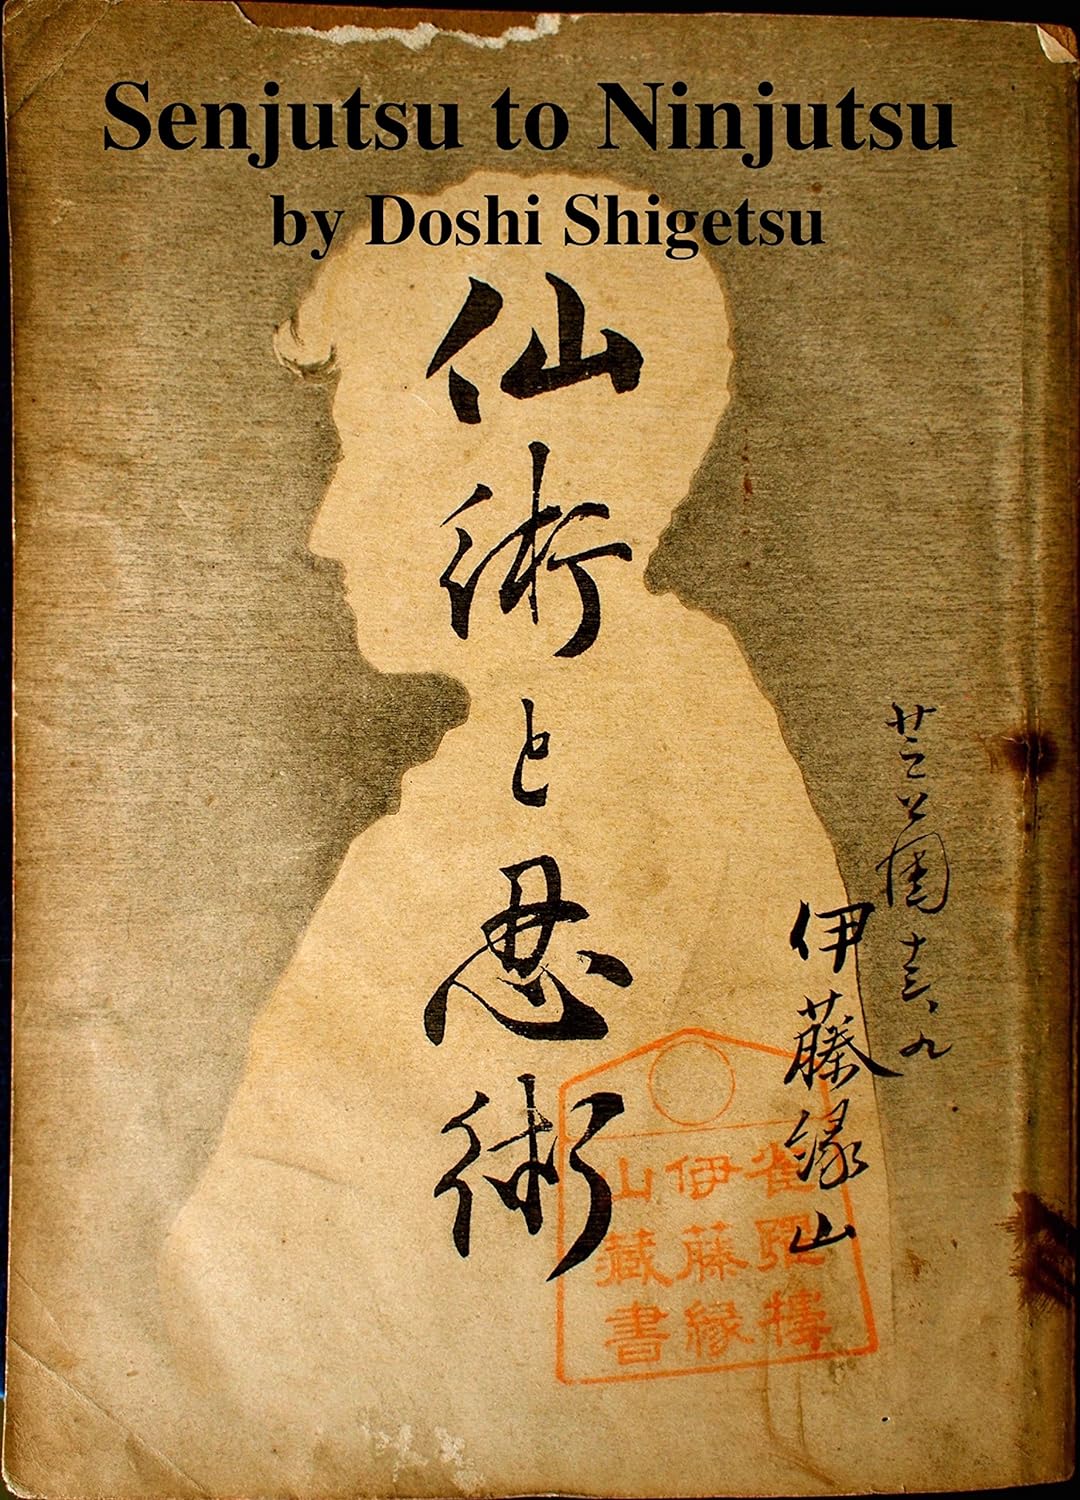 Senjutsu to Ninjutsu Book by Doshi Shigetsu